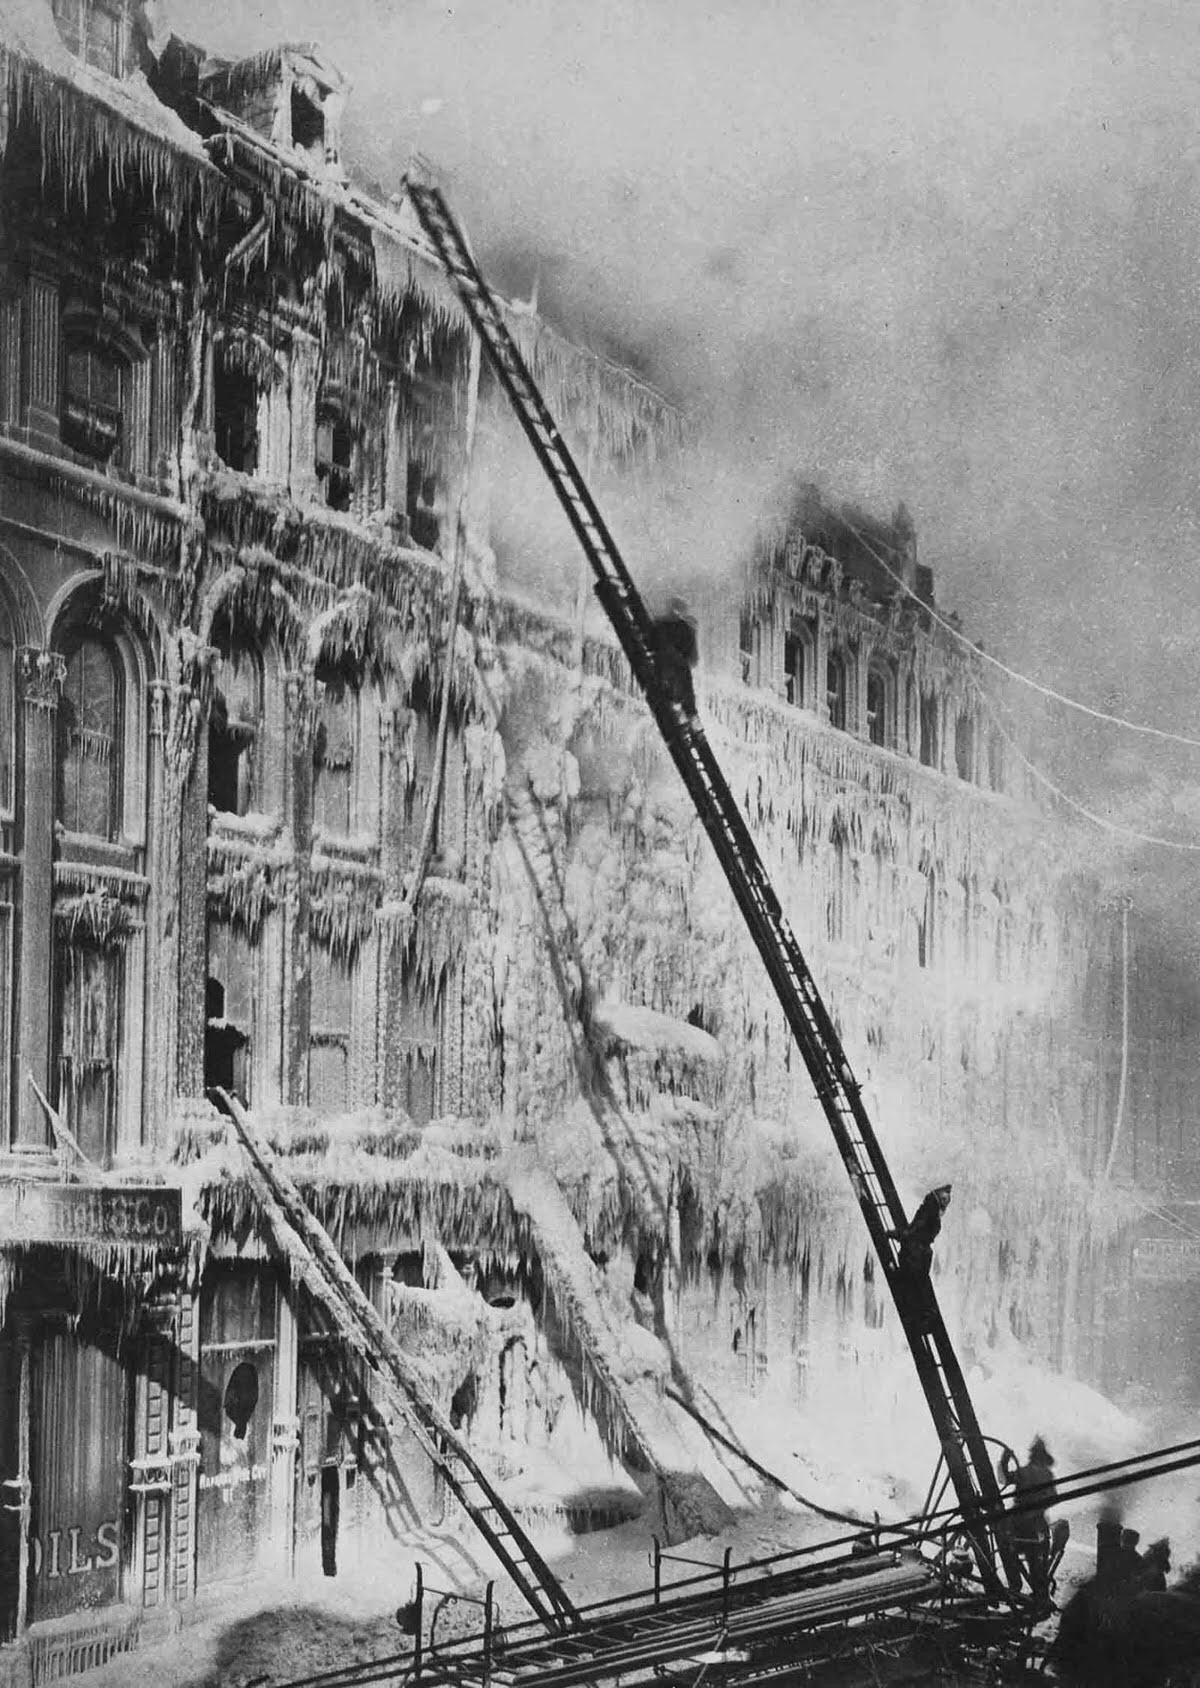 Firefighters battle a blaze in Montreal, 1889.